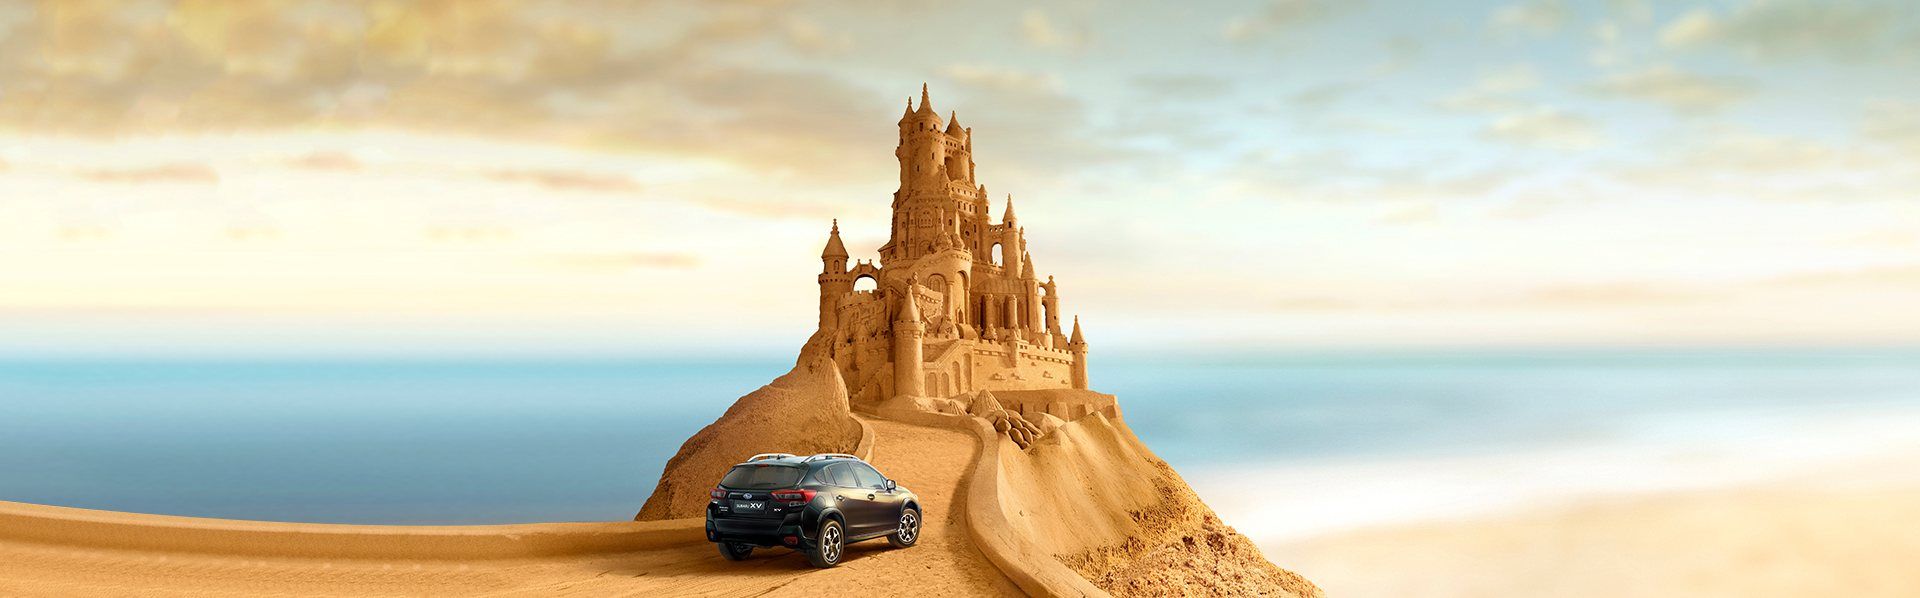 Subaru e castello di sabbia